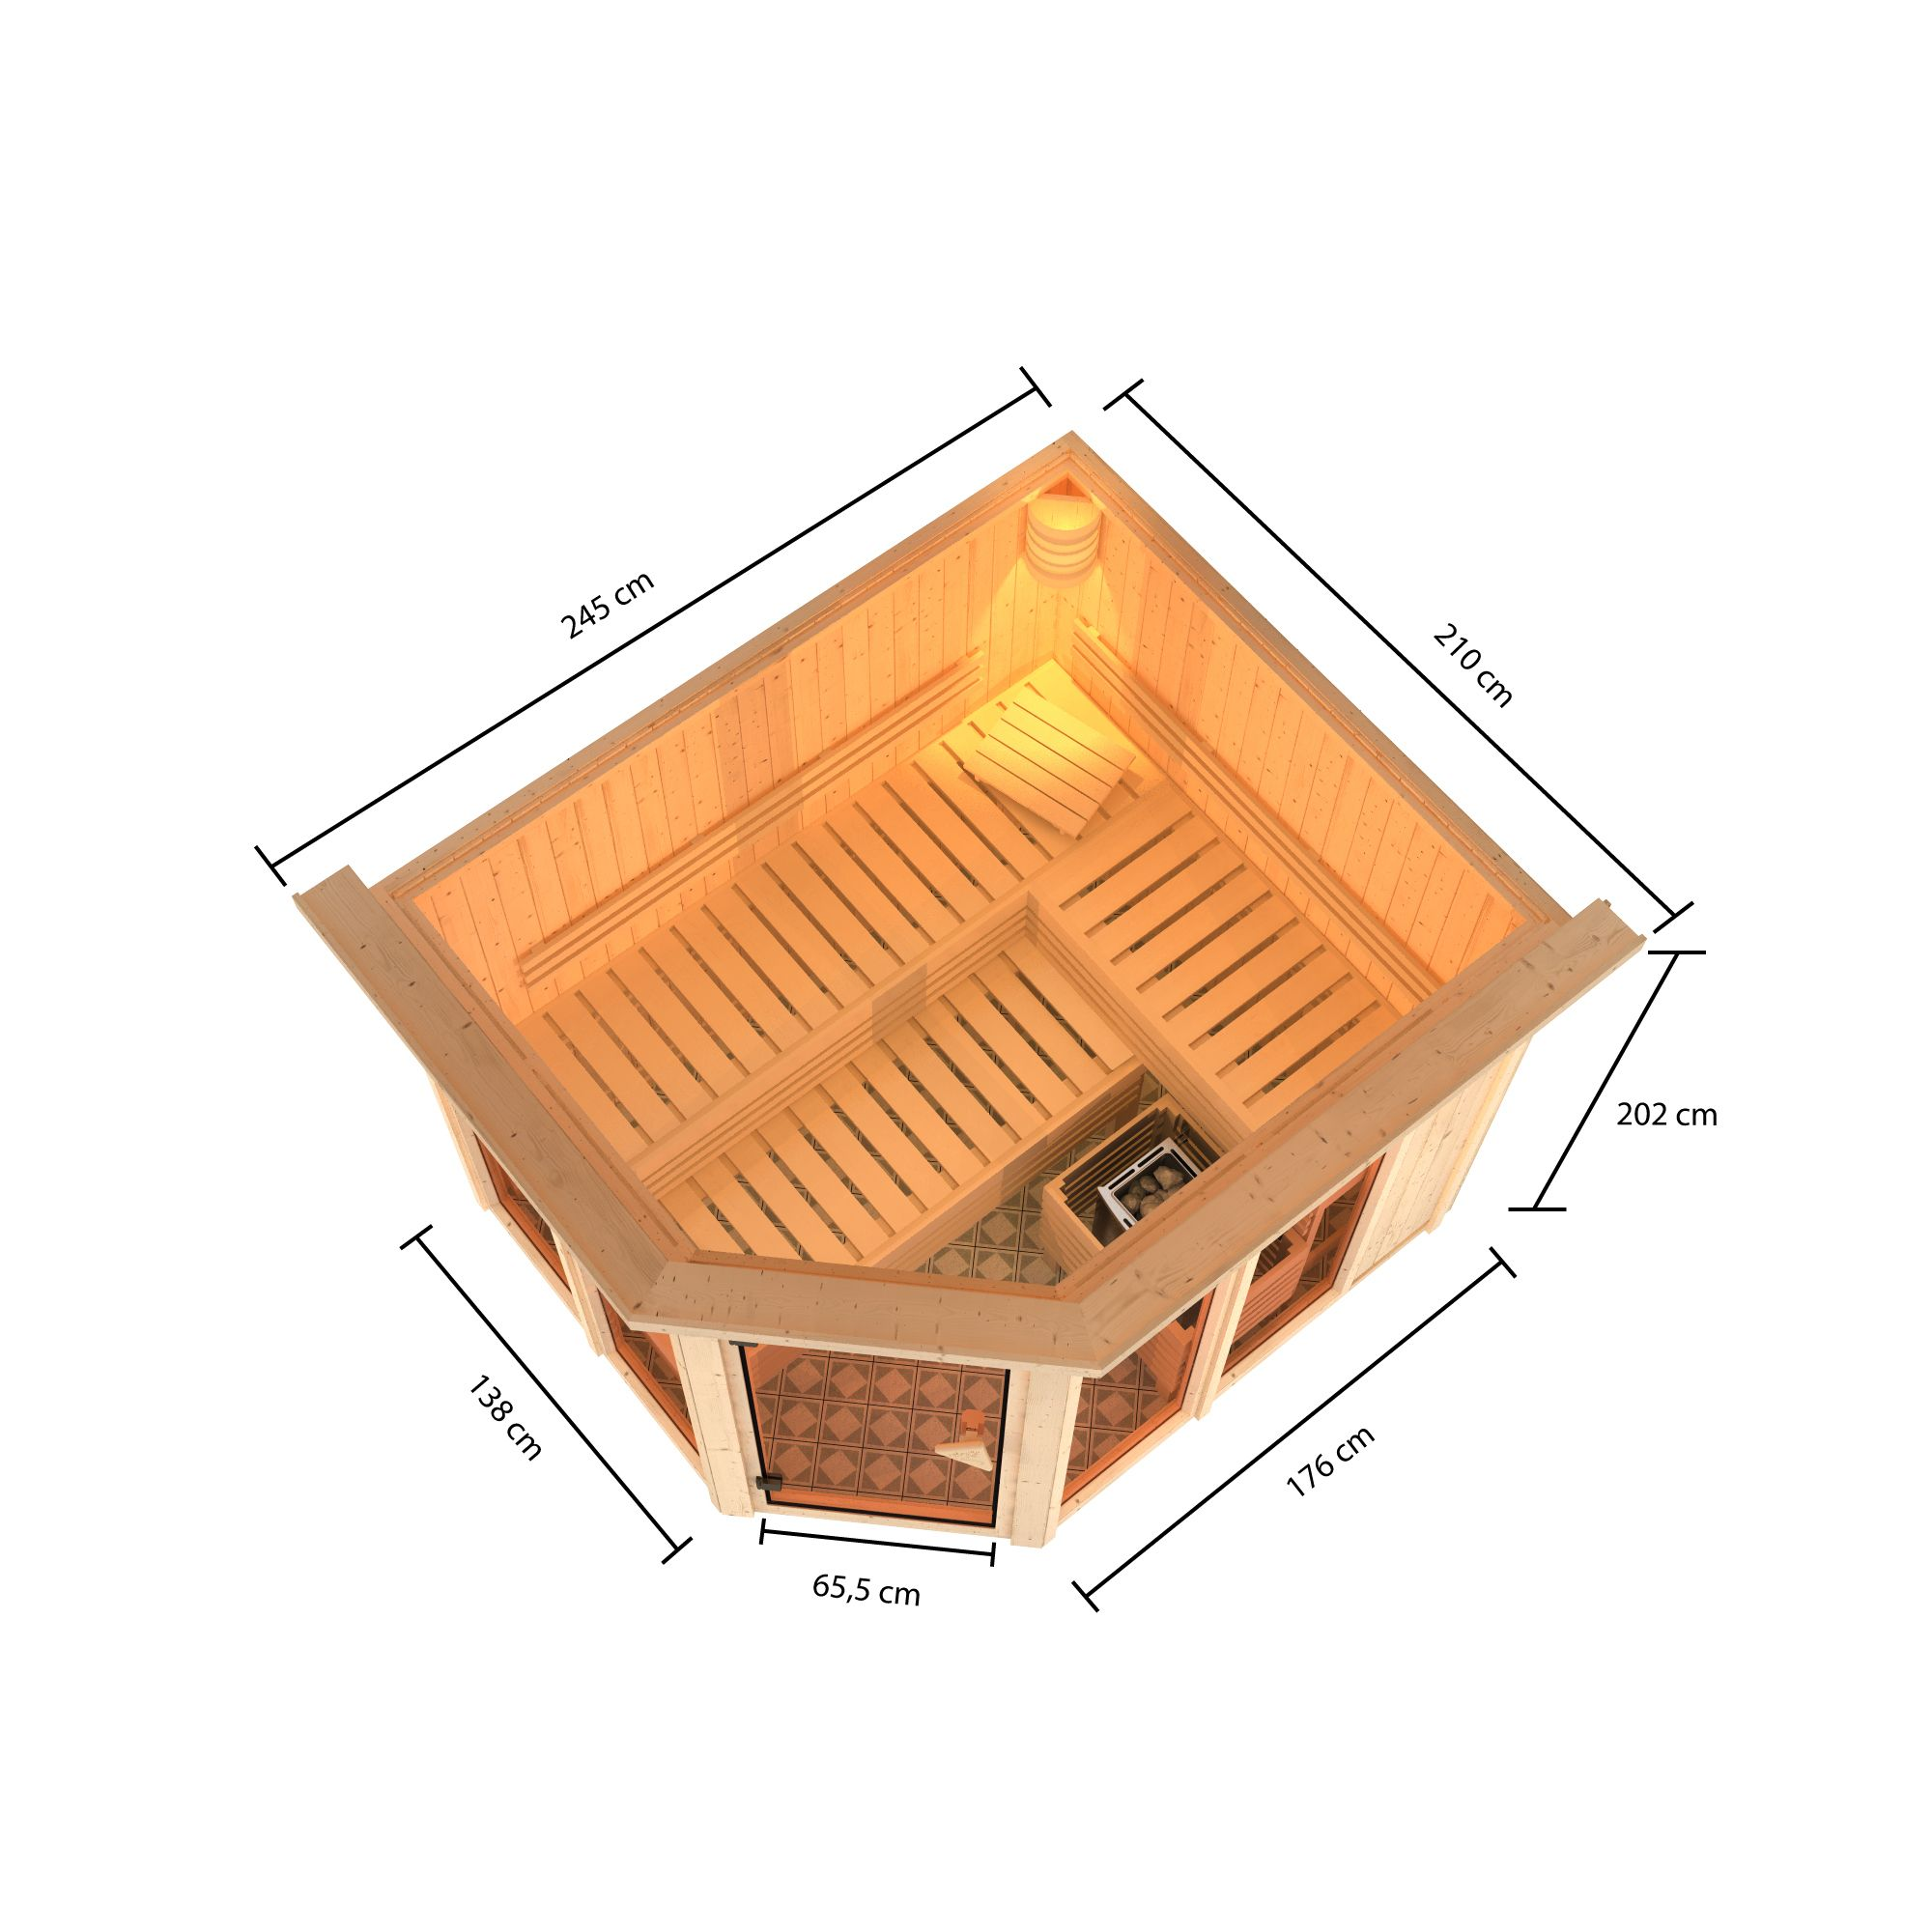 Sauna 'Ariadna 3' naturbelassen mit Kranz und bronzierter Tür 9 kW Ofen externe Steuerung 245 x 210 x 202 cm + product picture